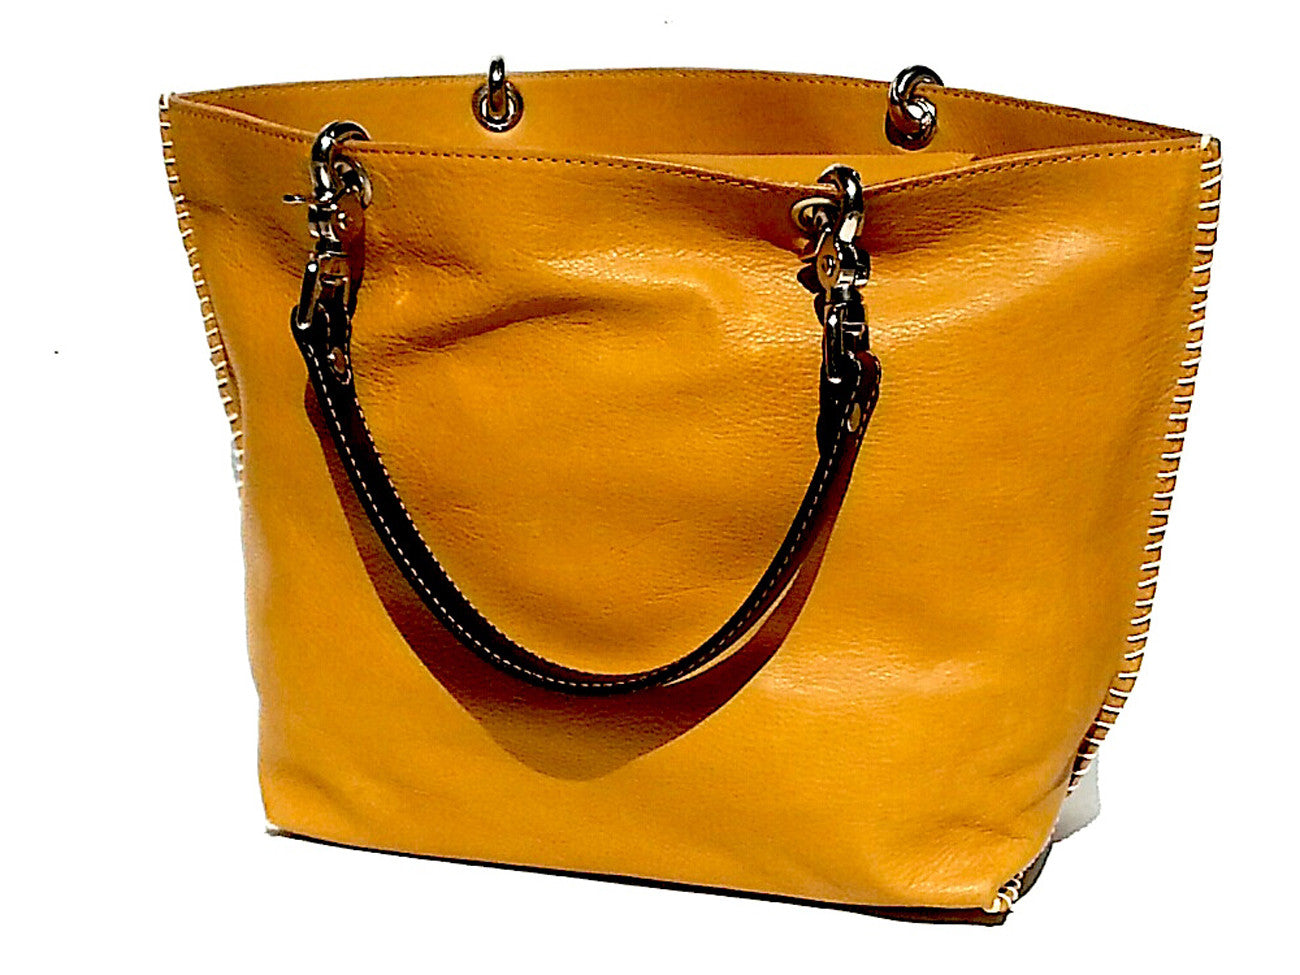 Gamidi Tote Bag Nappa Leather